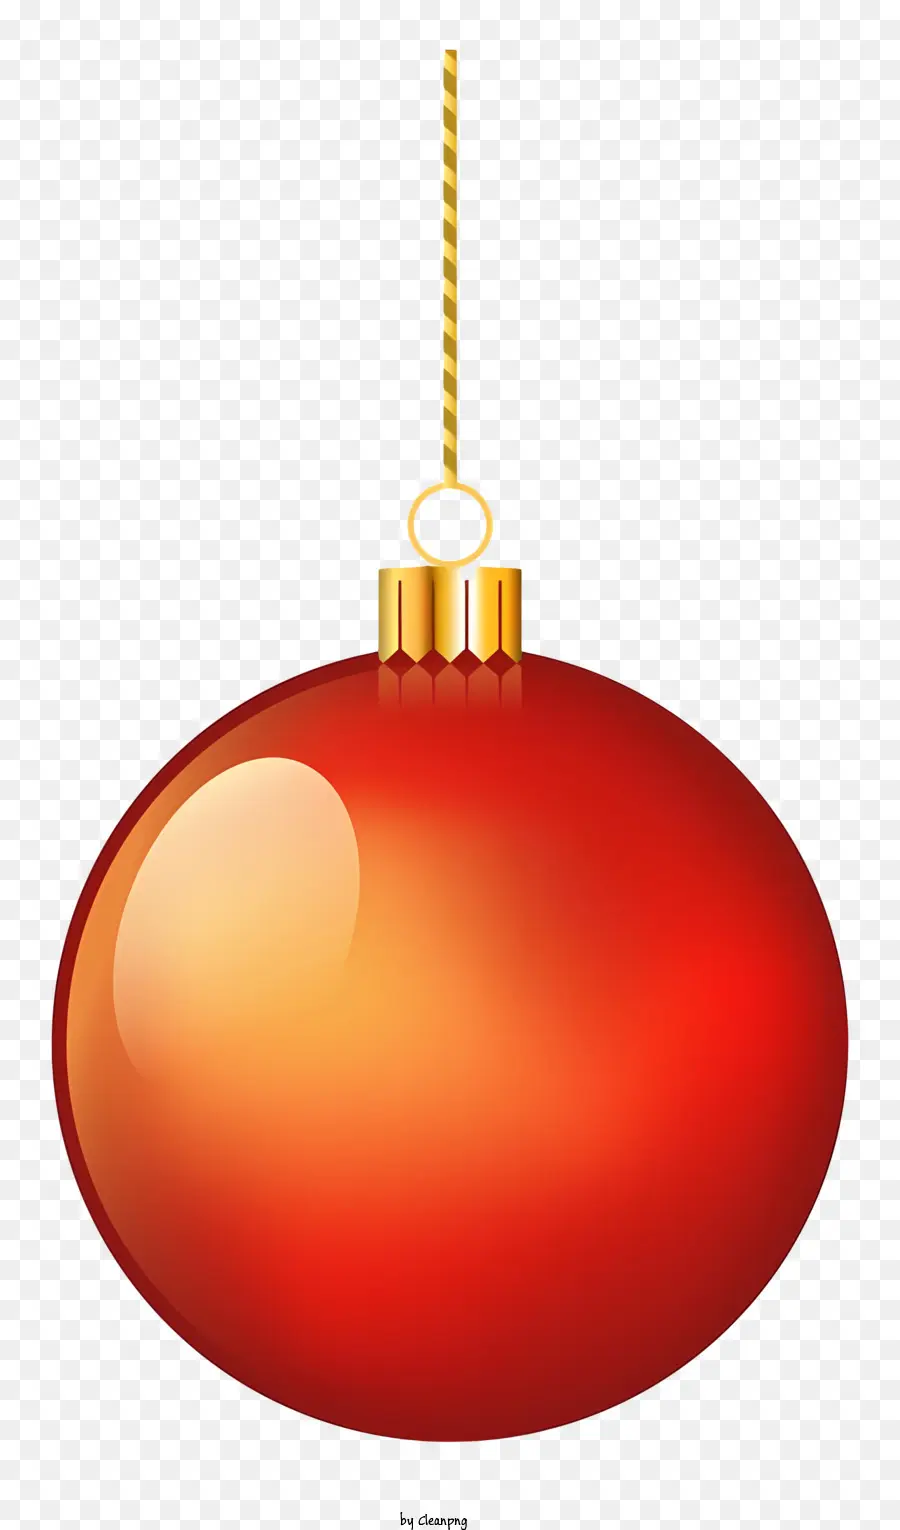 Trang trí giáng sinh - Đồ trang trí Giáng sinh màu đỏ trên chuỗi vàng, kết thúc sáng bóng